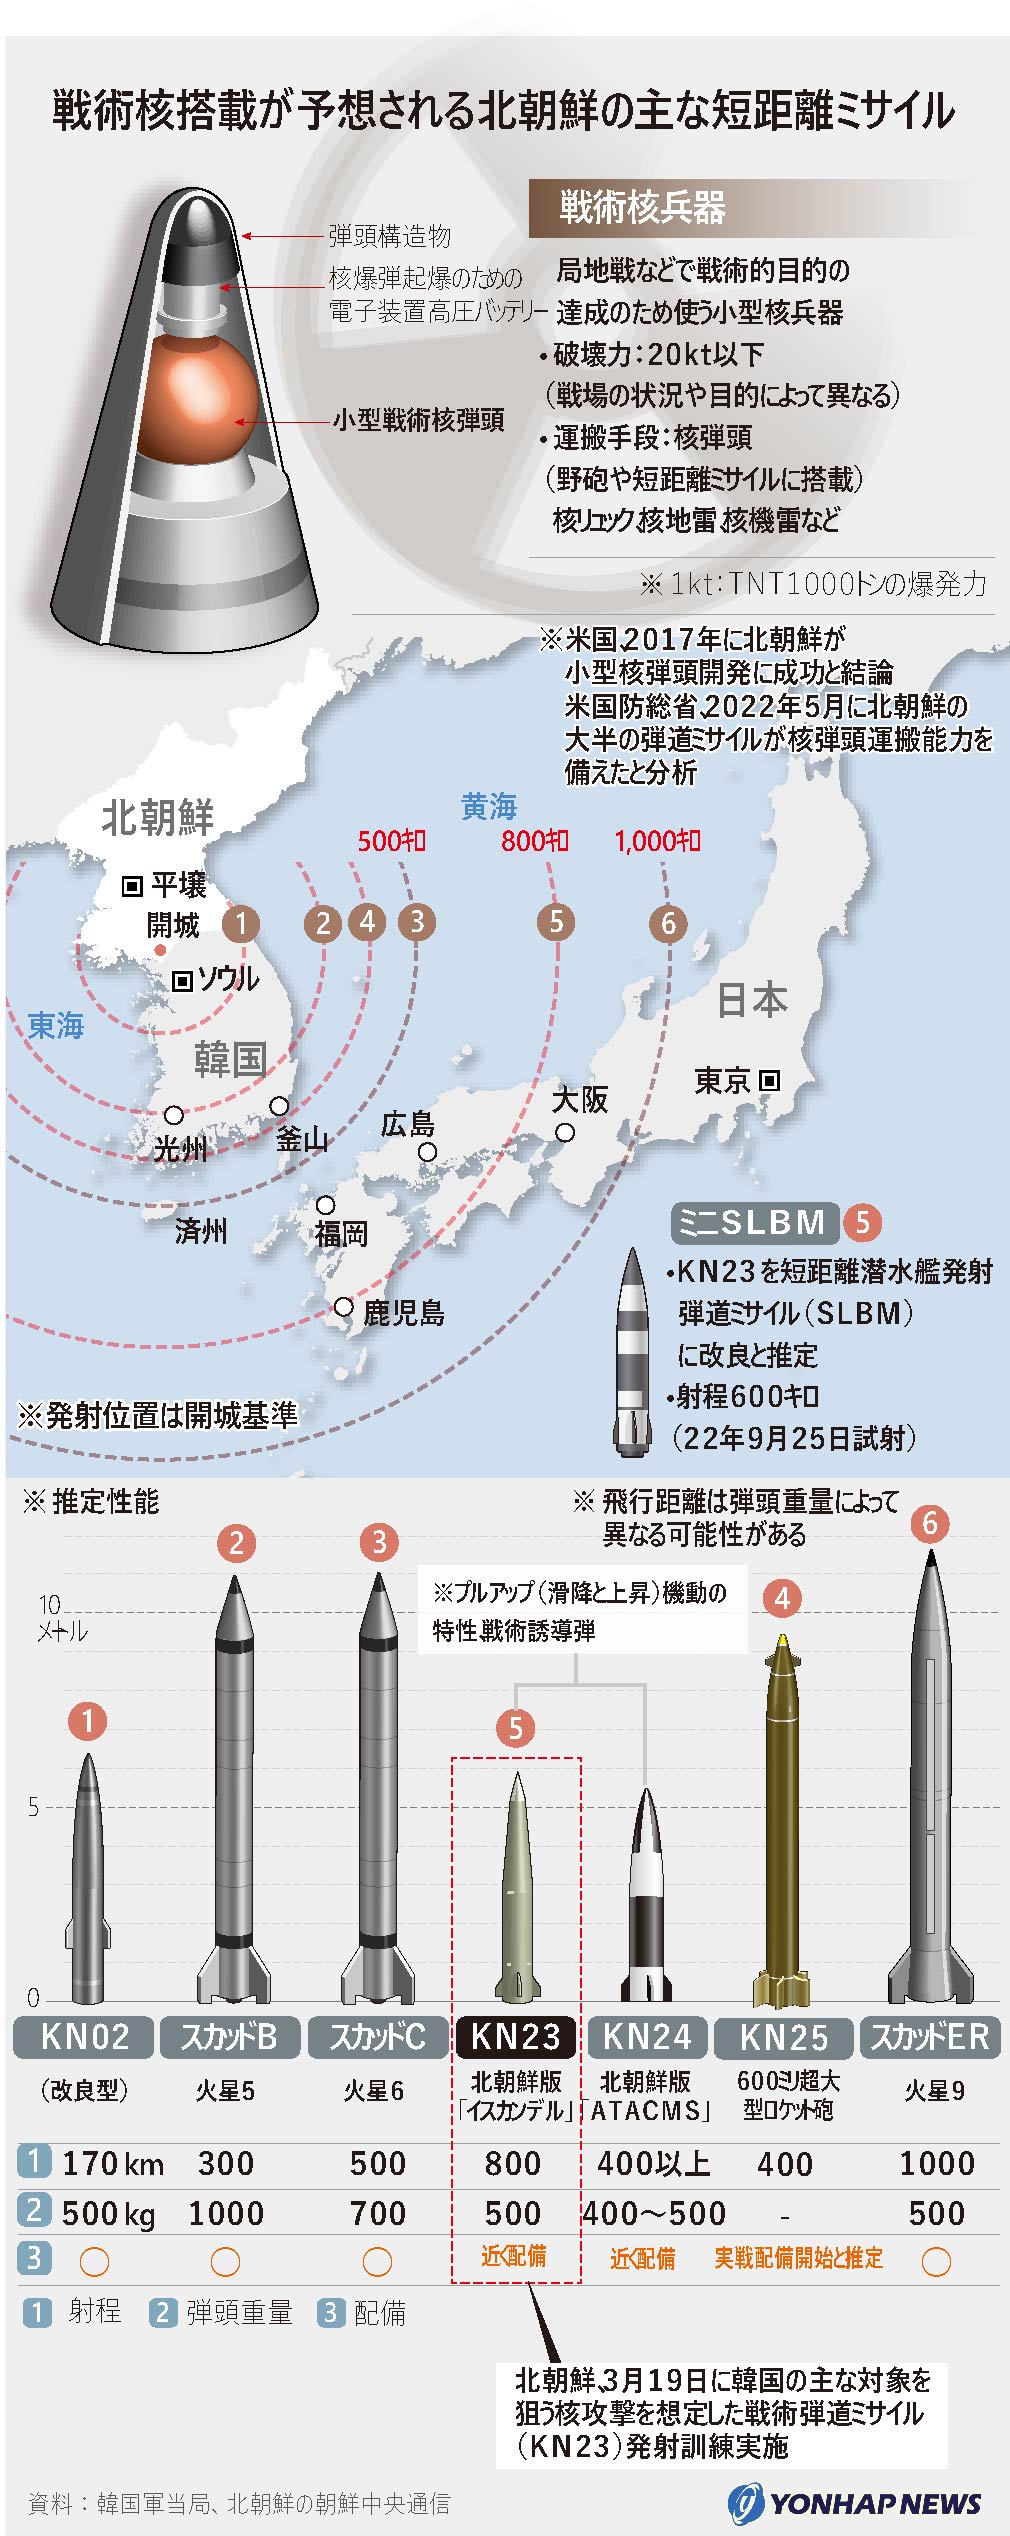 戦術核搭載が予想される北朝鮮の主な短距離ミサイル